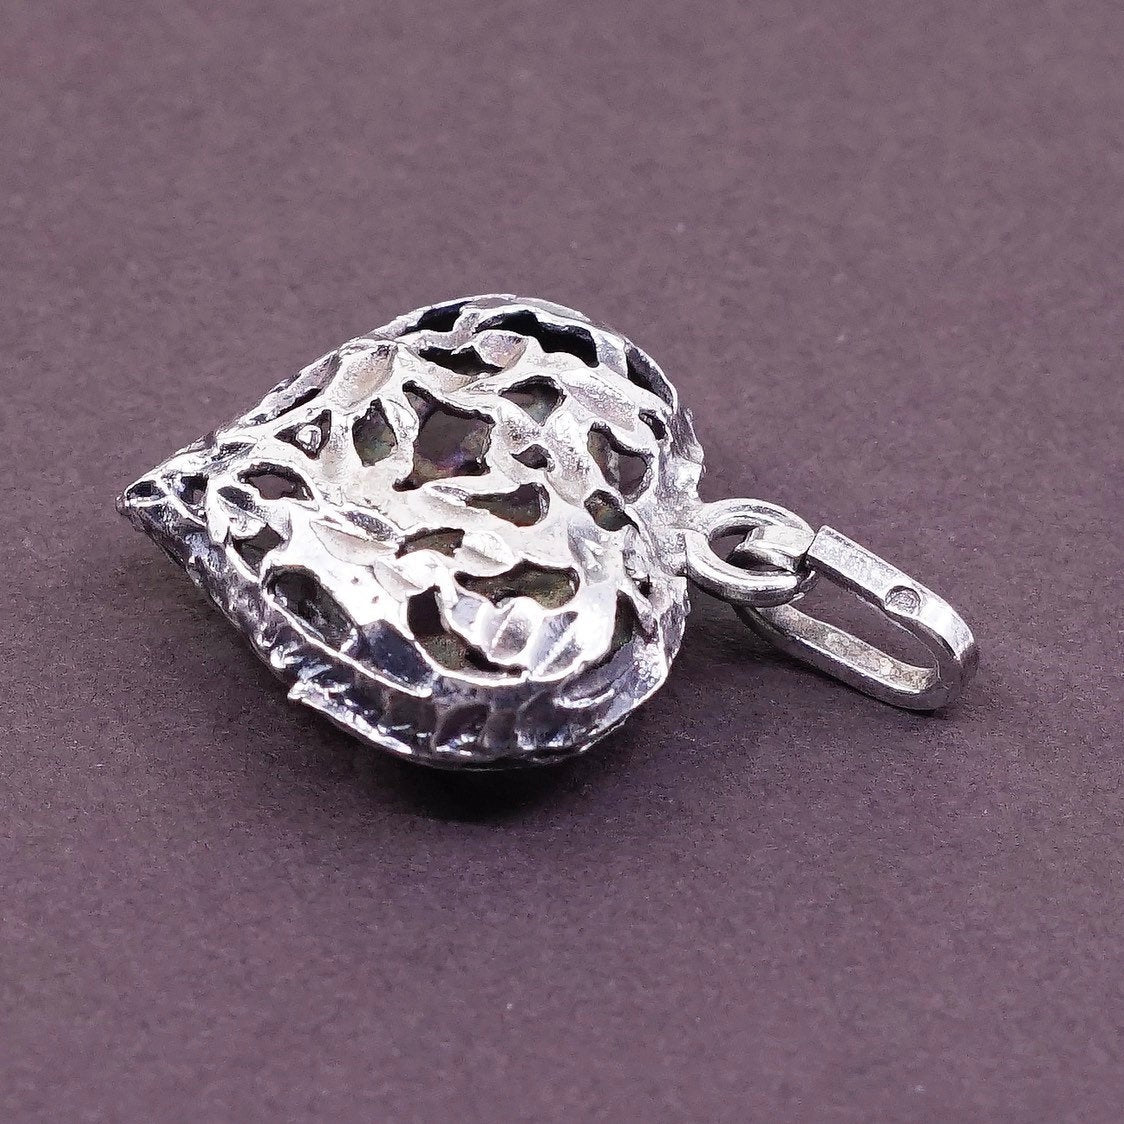 VTG Sterling silver handmade pendant, 925 silver filigree puffy heart pendant